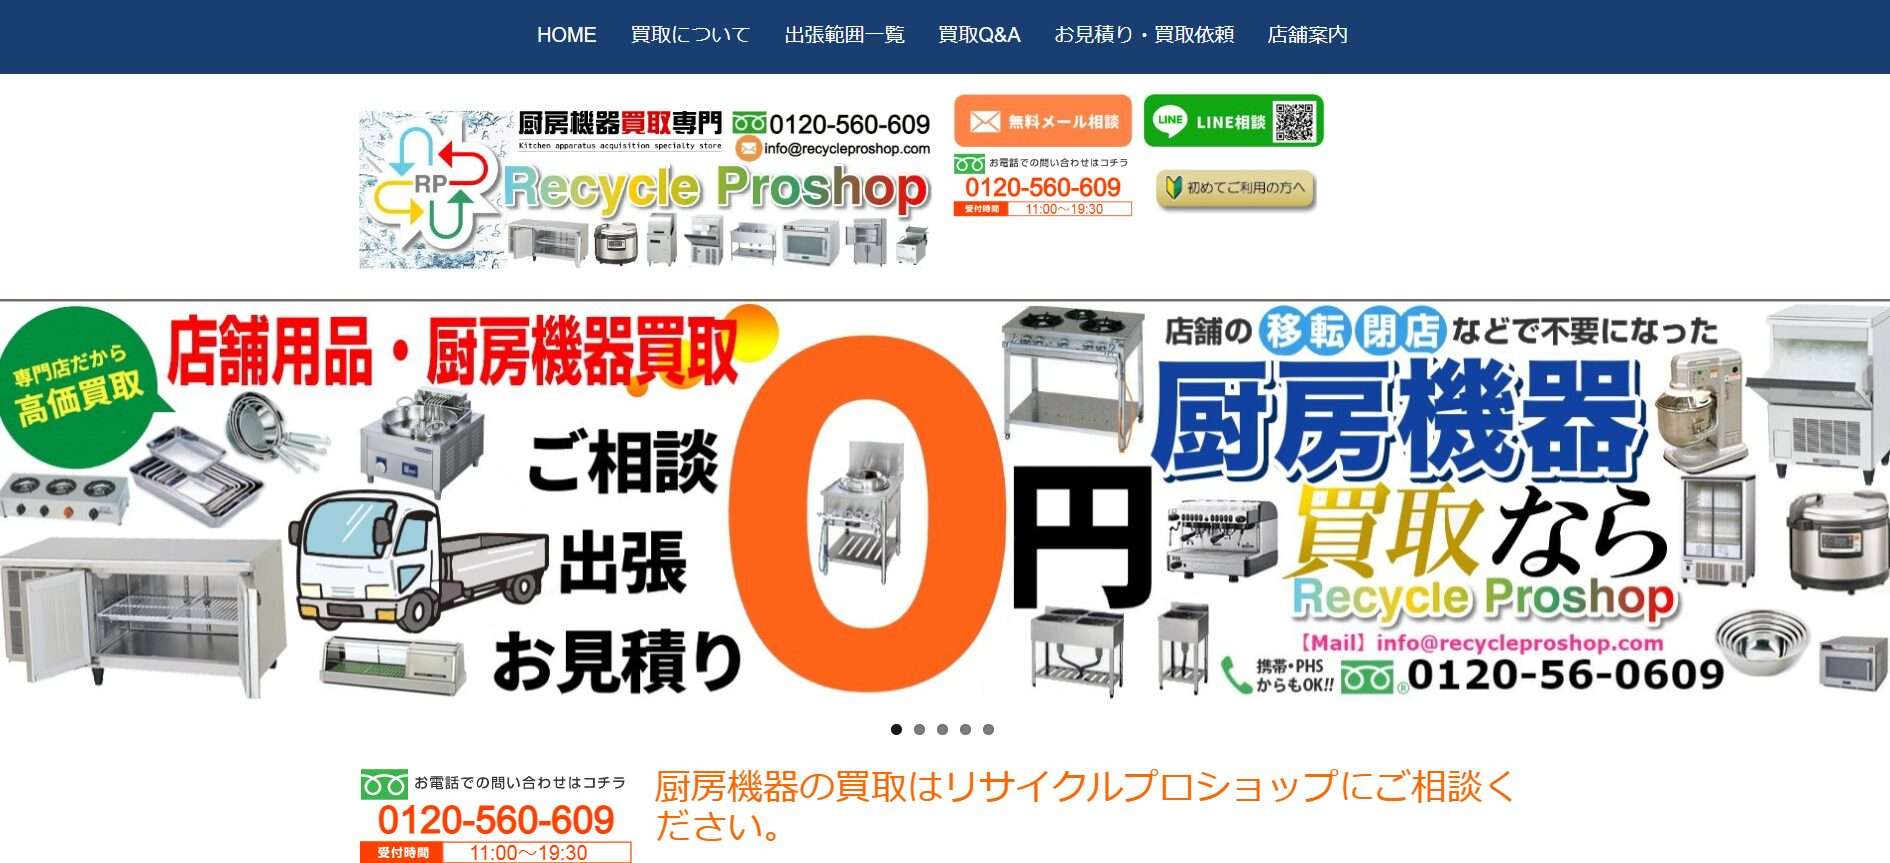 厨房機器買取【リサイクルプロショップ】